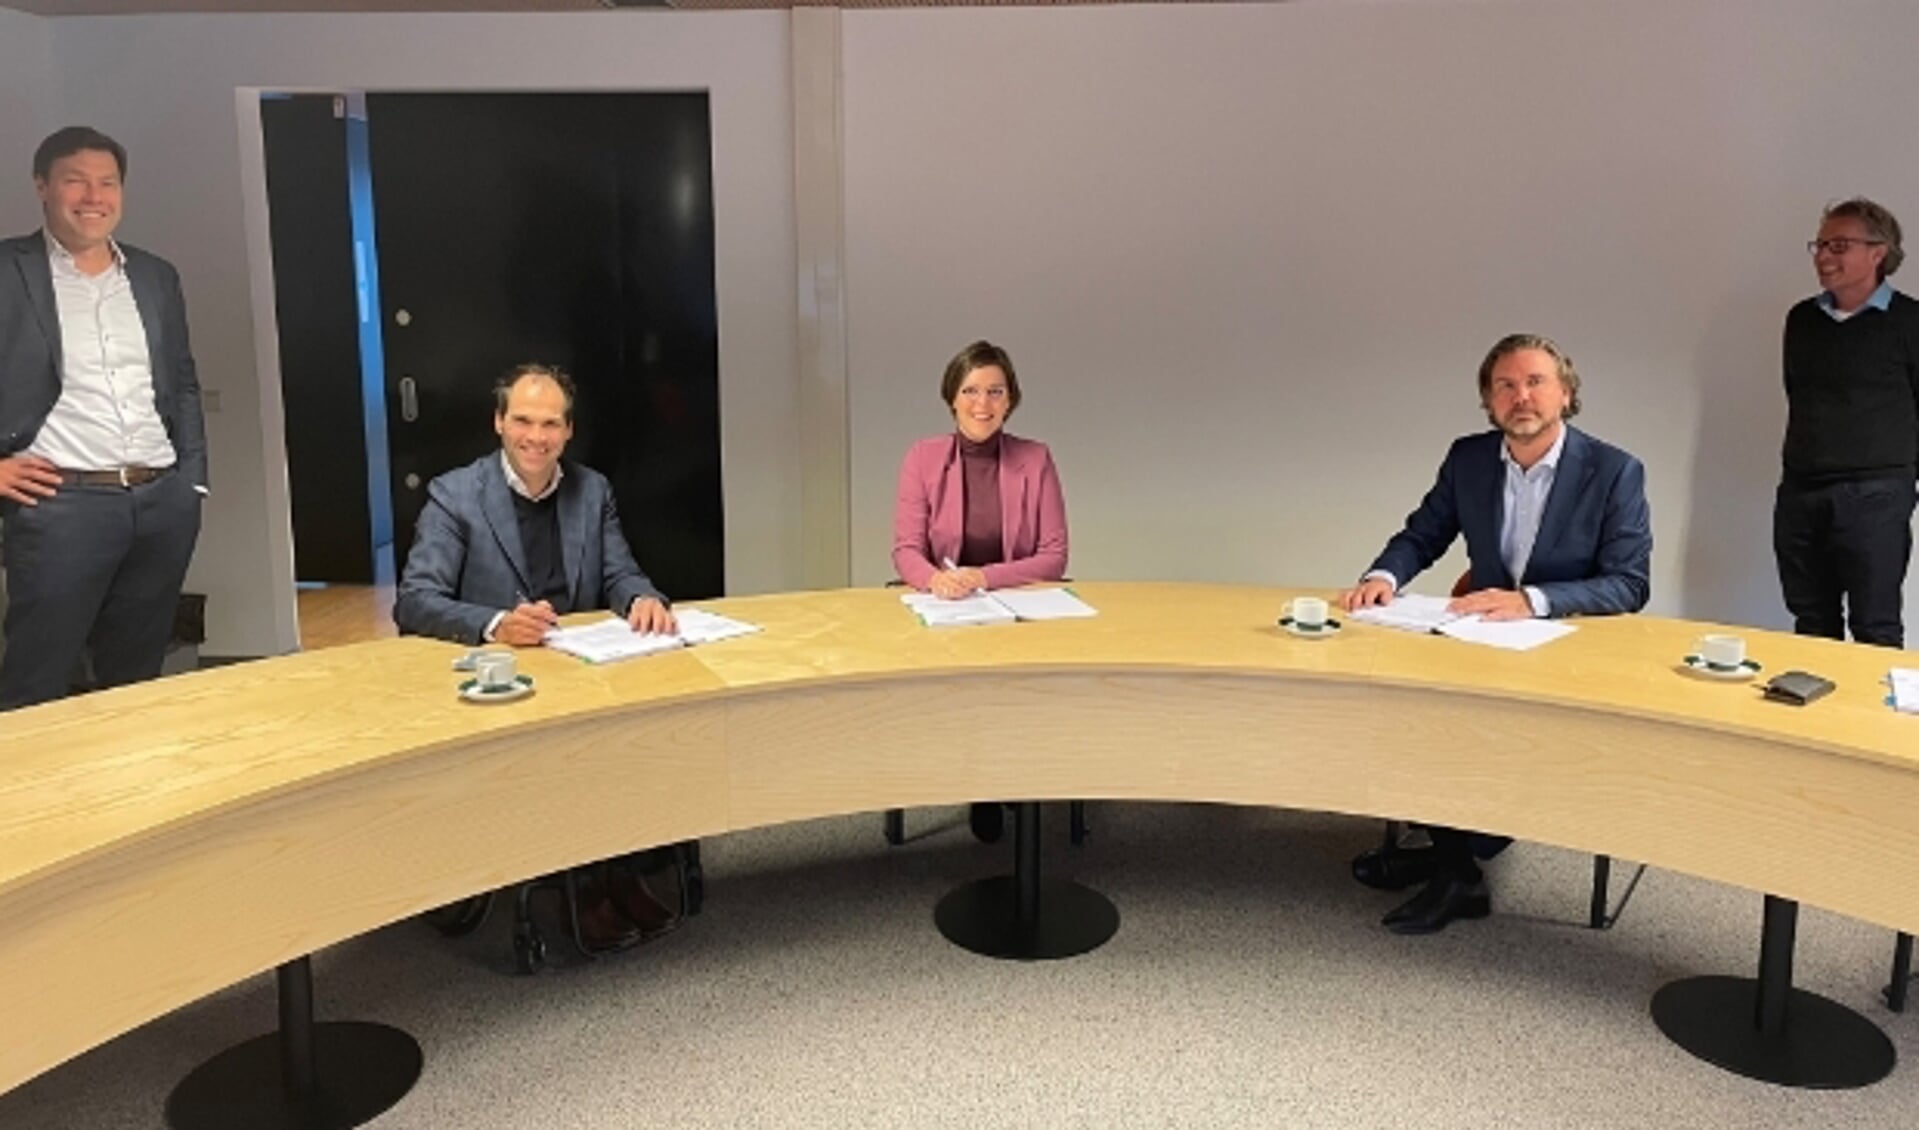 De IJsselsteinse wethouder Eveline Schell zette in het IJsselsteinse gemeentehuis namens vier gemeenten haar handtekening onder de overeenkomsten.